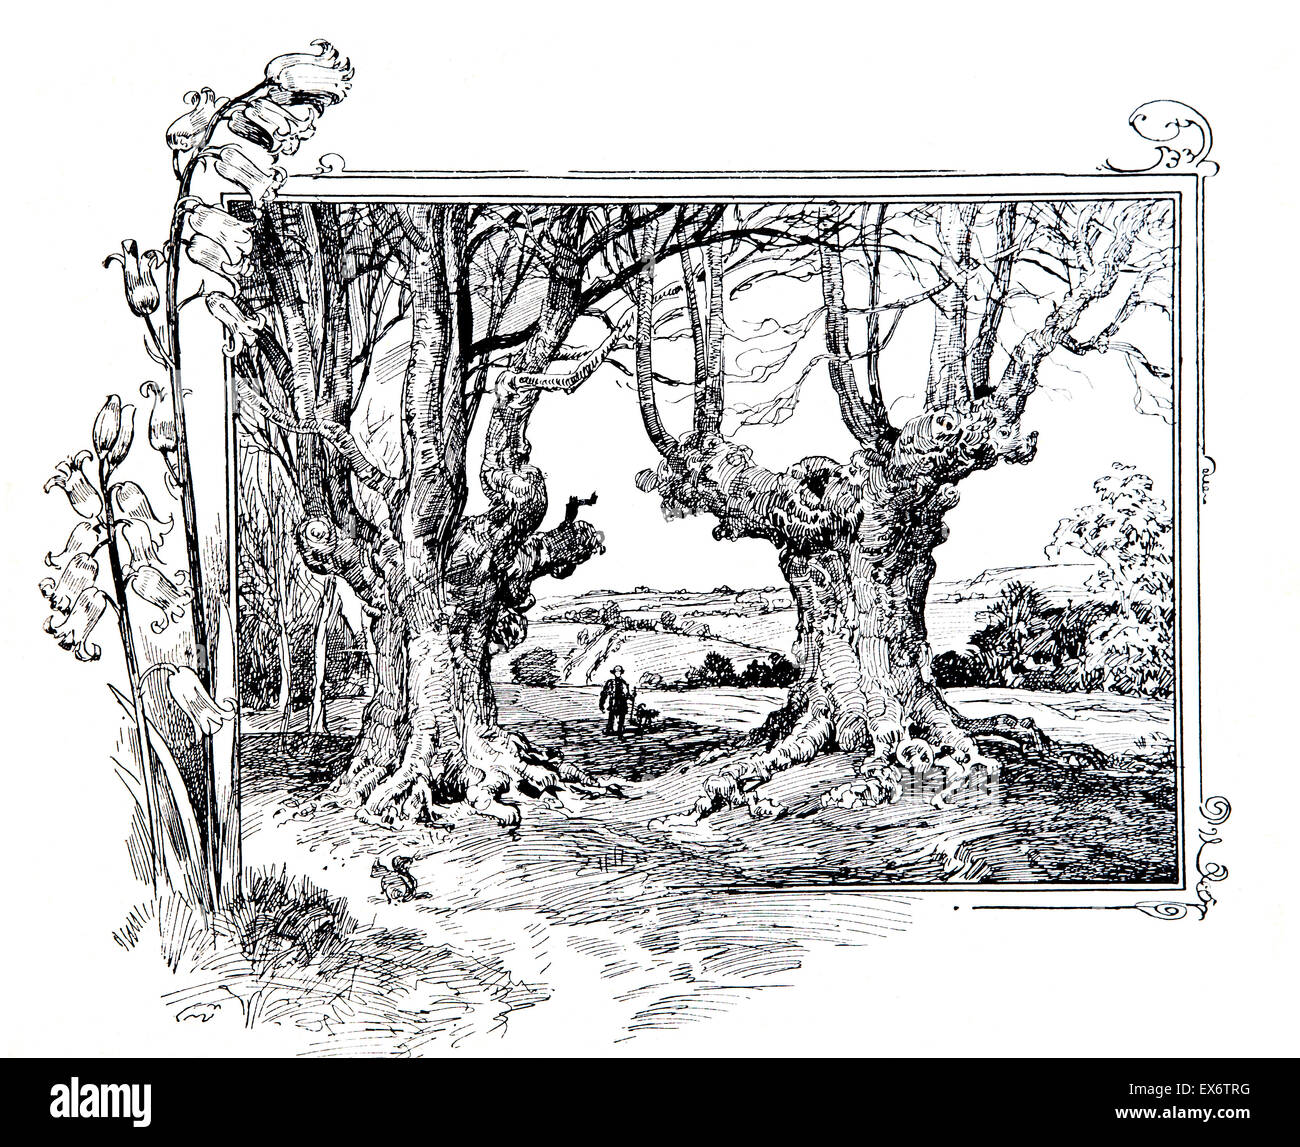 Parmi les Burnham Beeches, ligne, illustration, à partir de la fin de magazine Banque D'Images